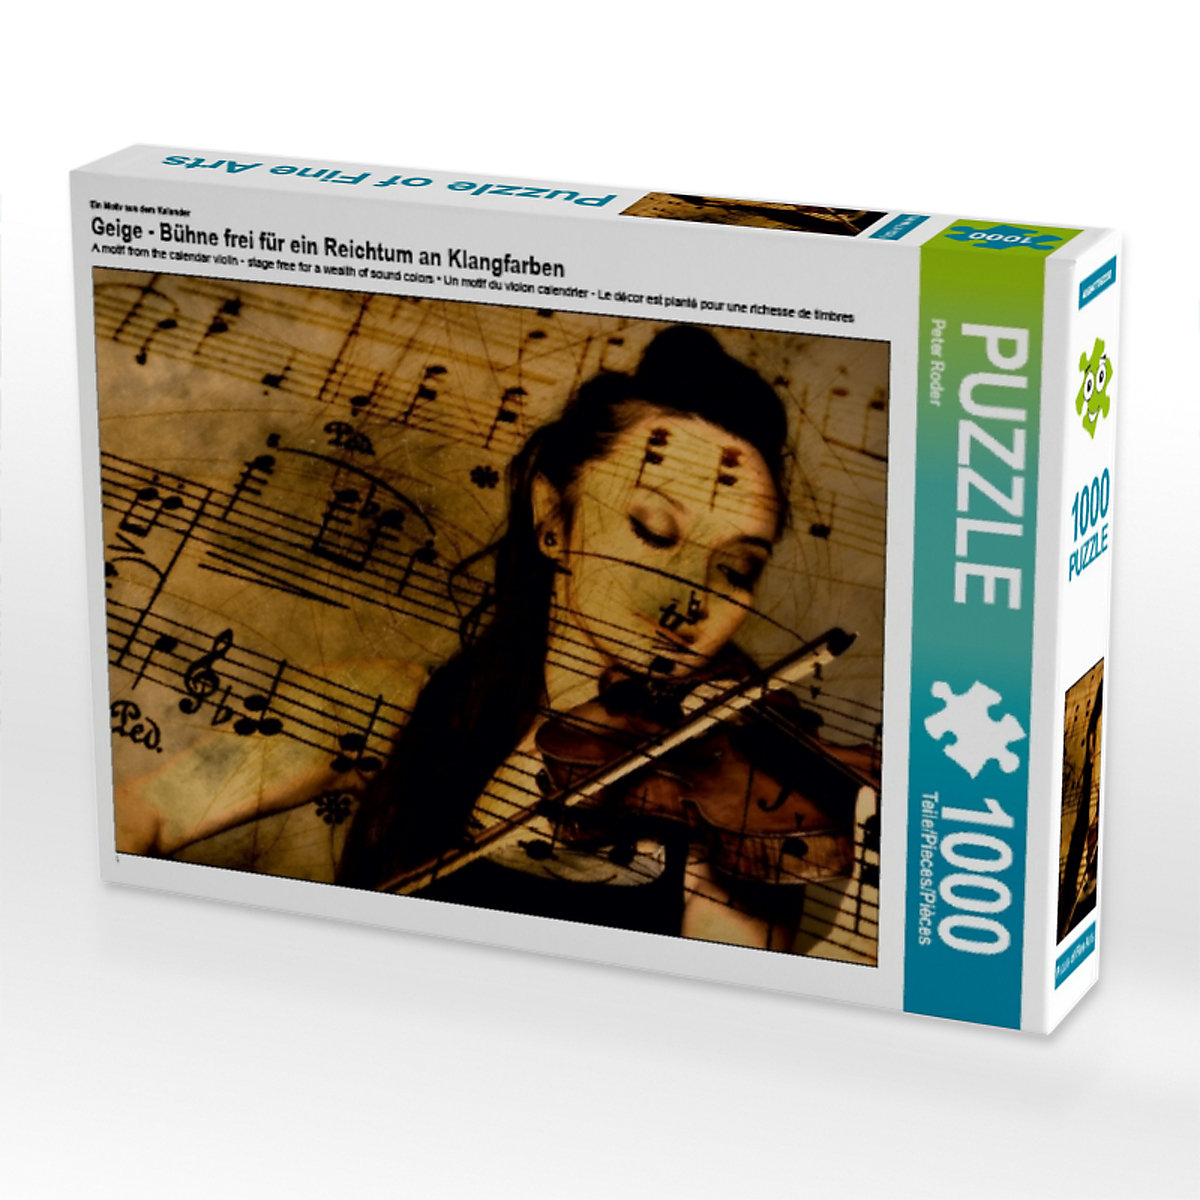 CALVENDO® Puzzle CALVENDO Puzzle Geige Bühne frei für ein Reichtum an Klangfarben 1000 Teile Foto-Puzzle für glückliche Stunden